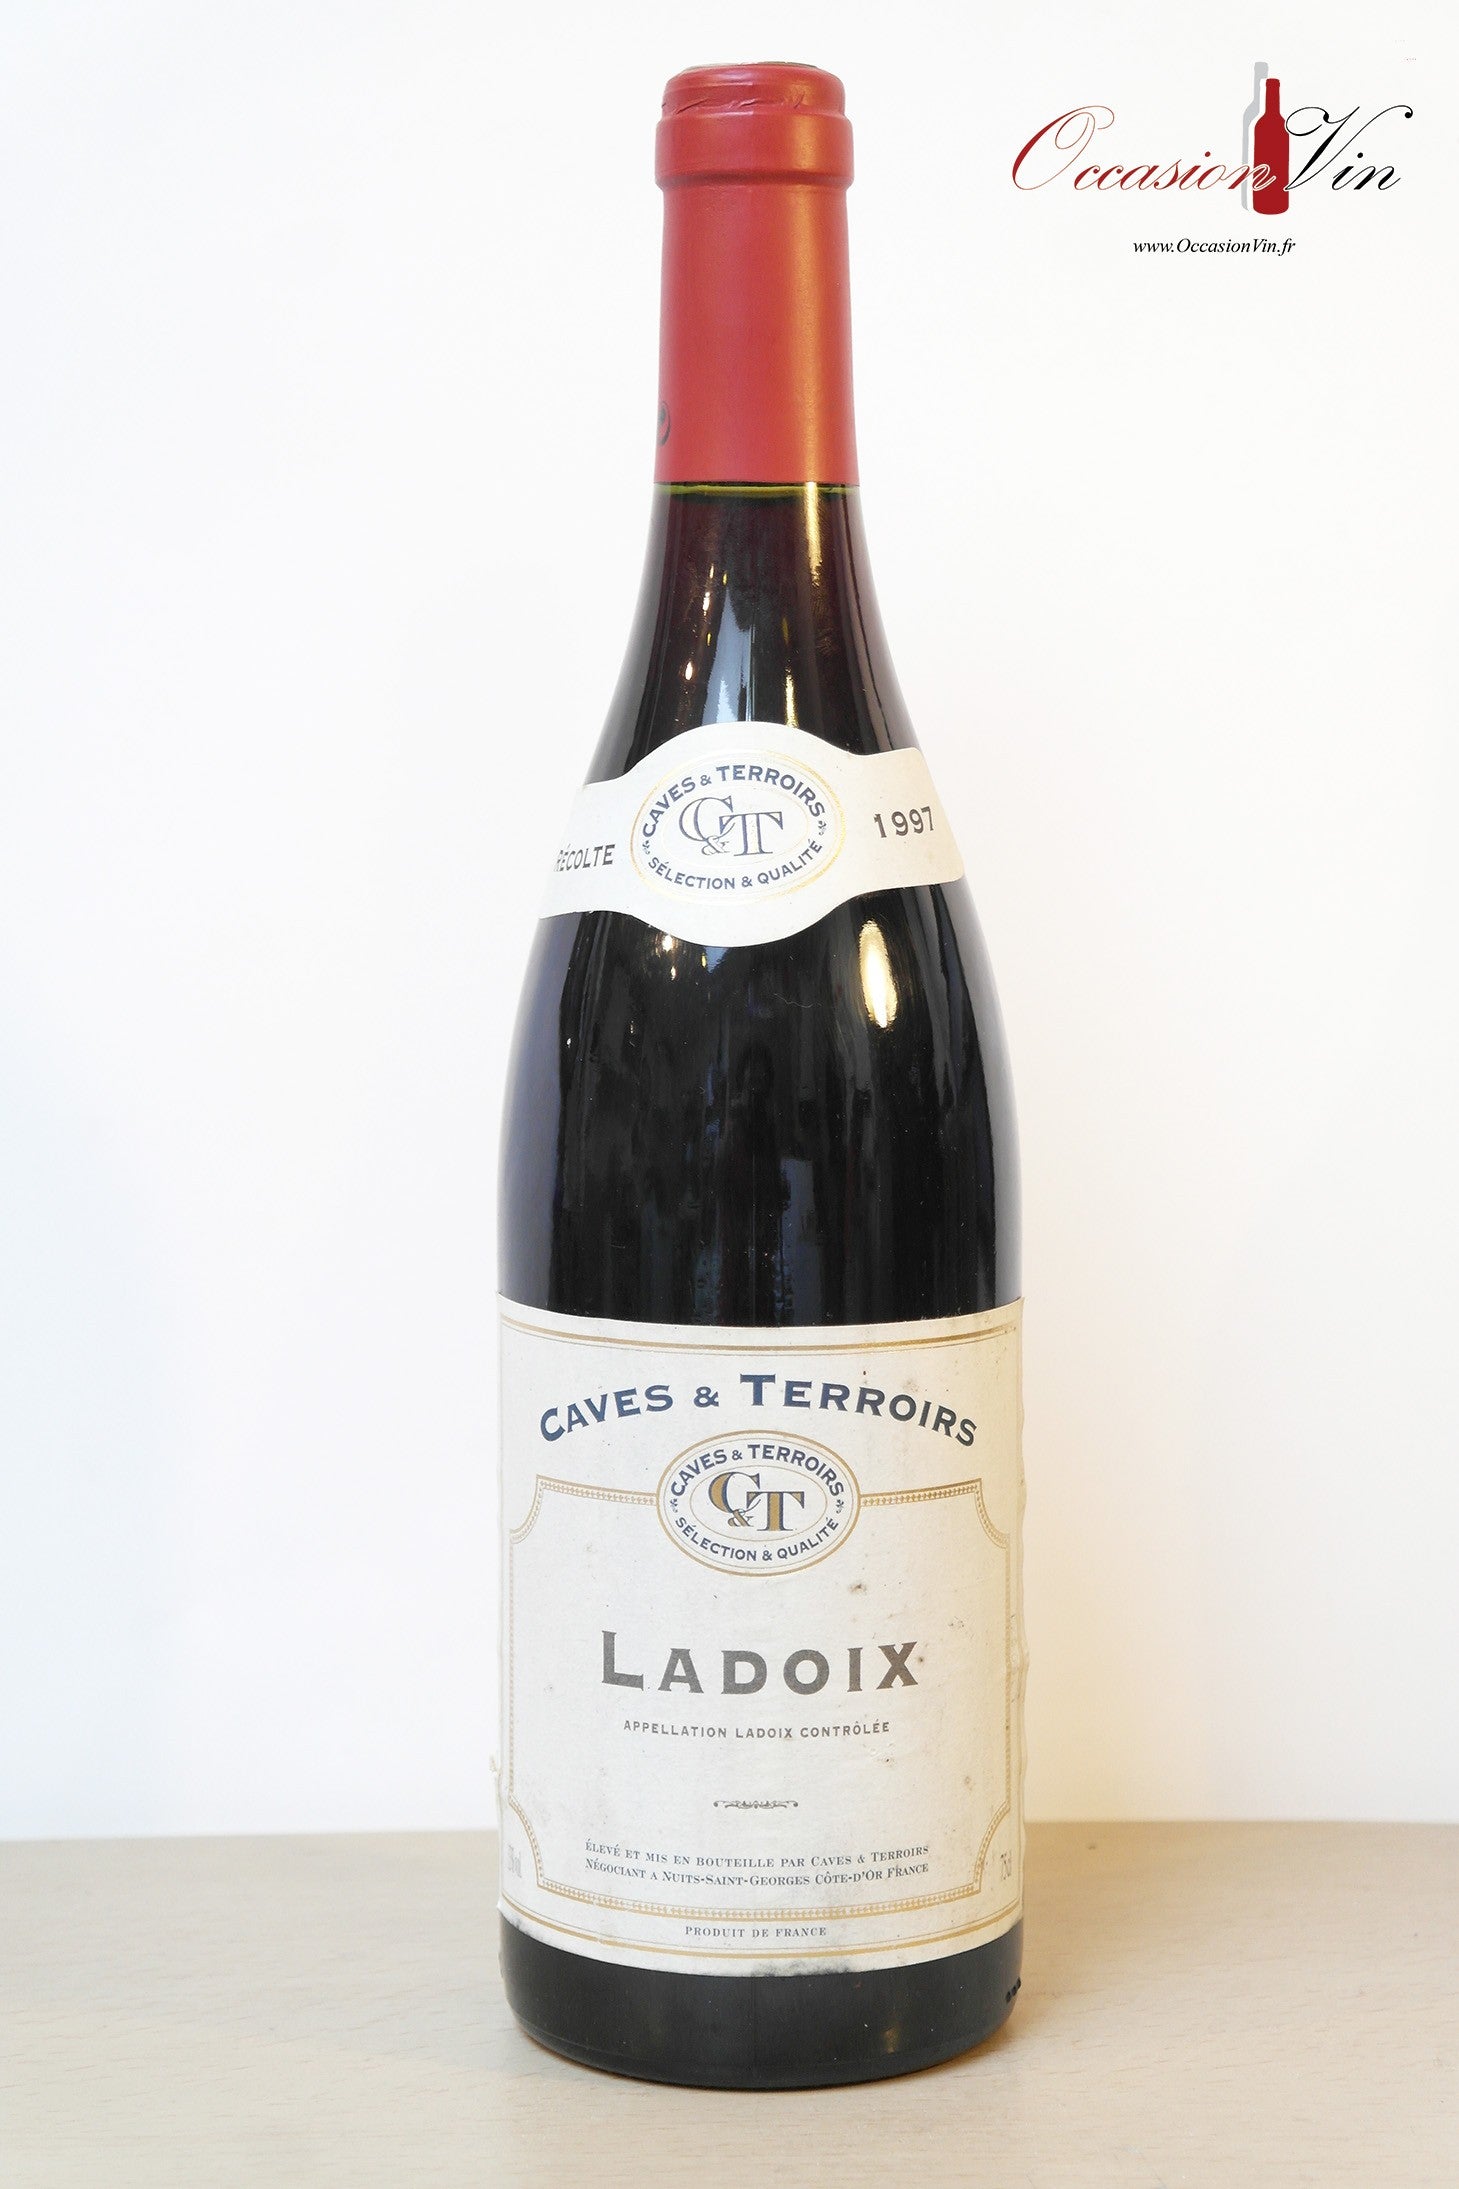 Ladoix Cave et Terroirs Vin 1997